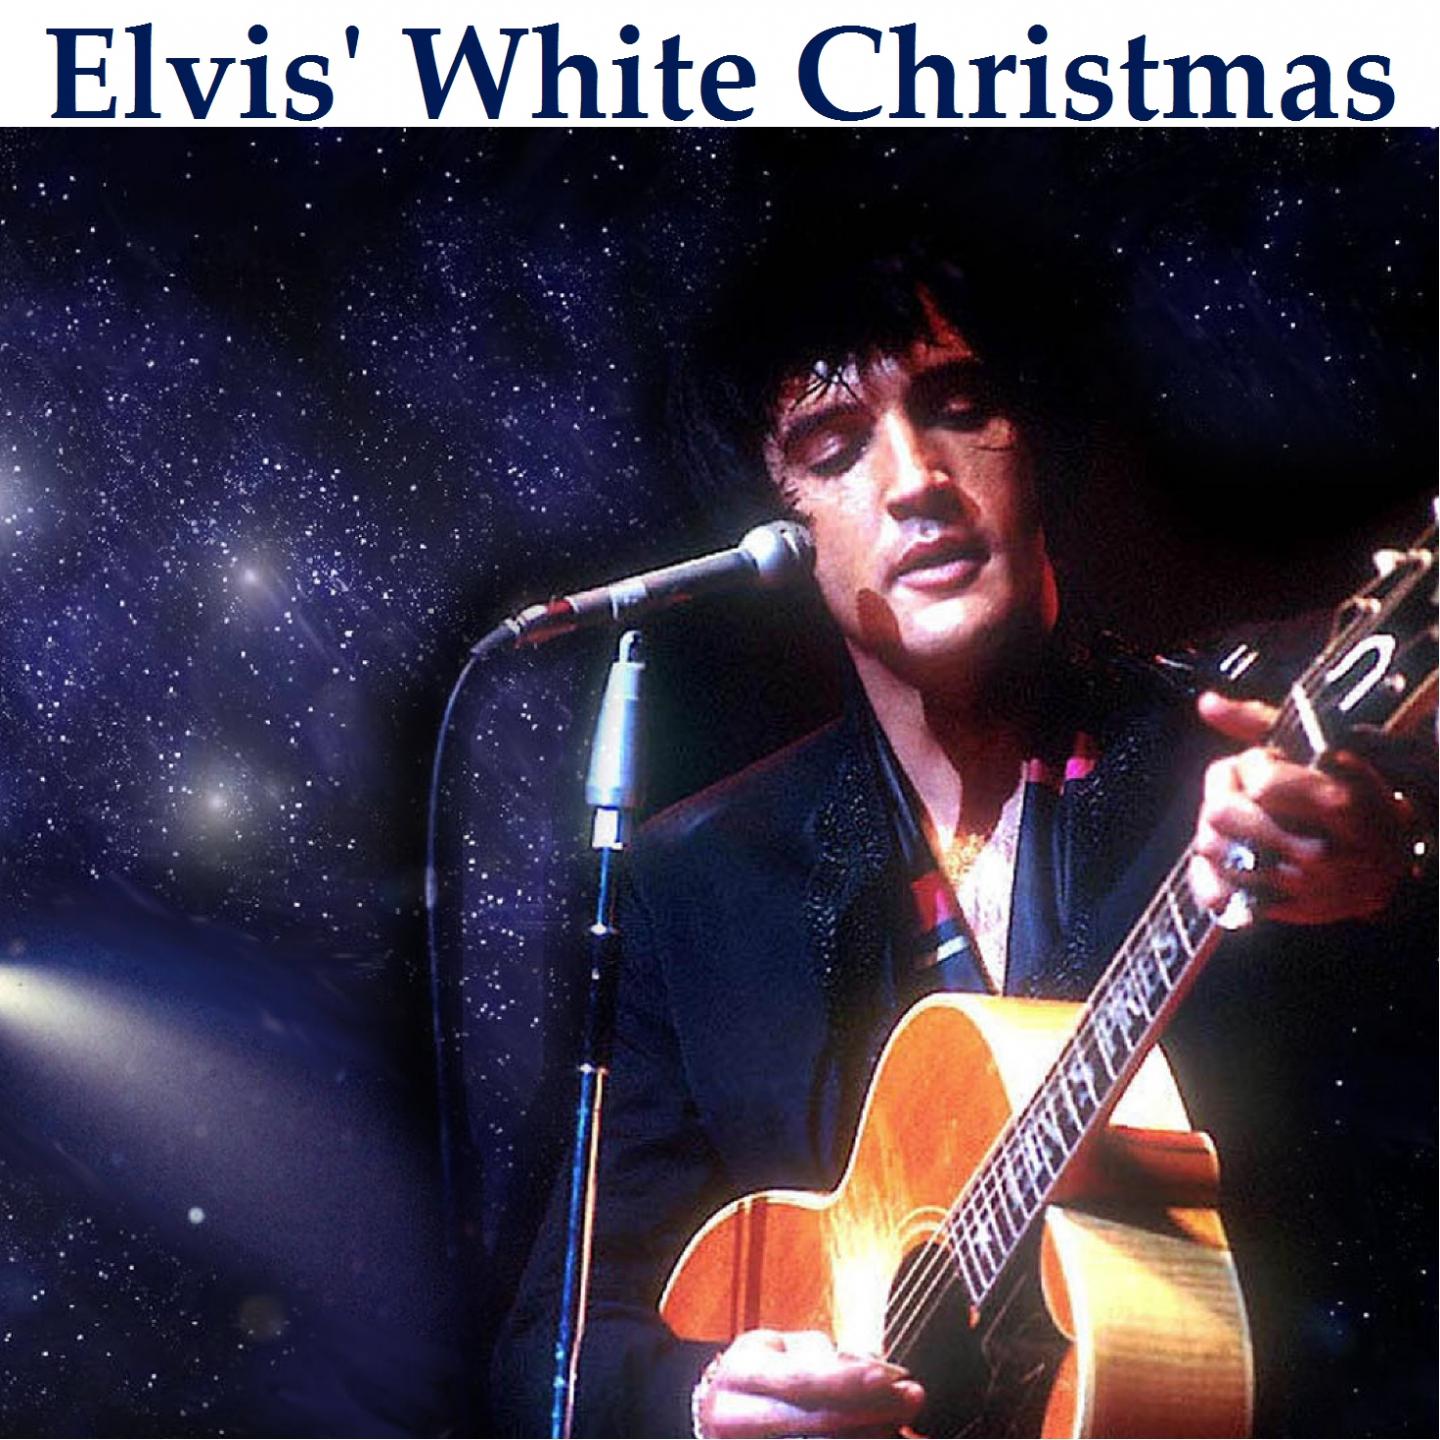 Elvis' White Christmas